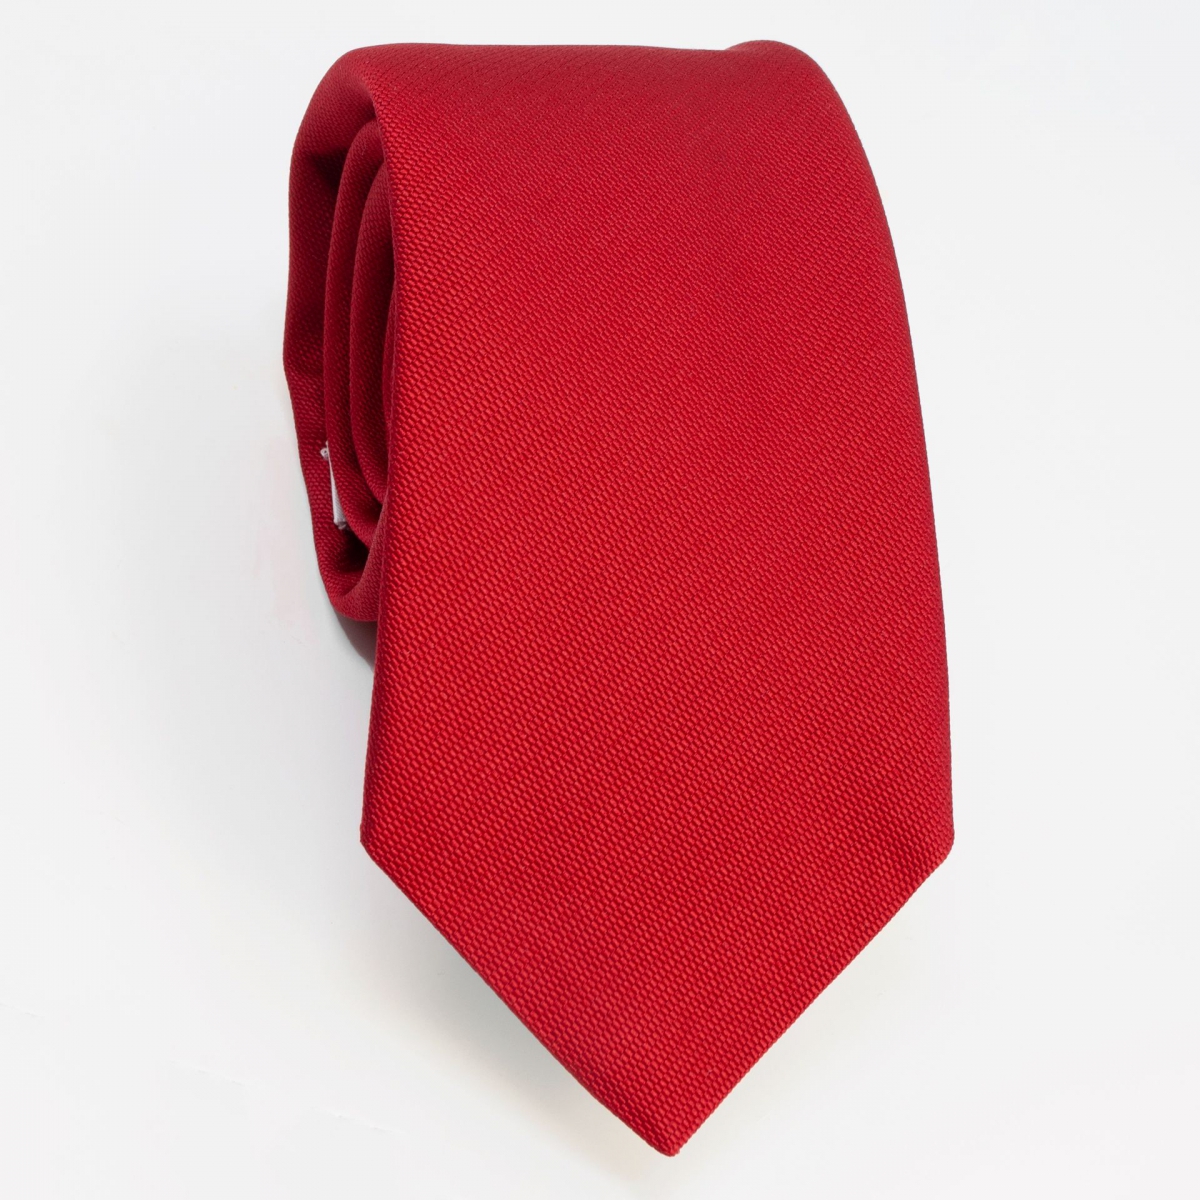 Brucle red silk tie